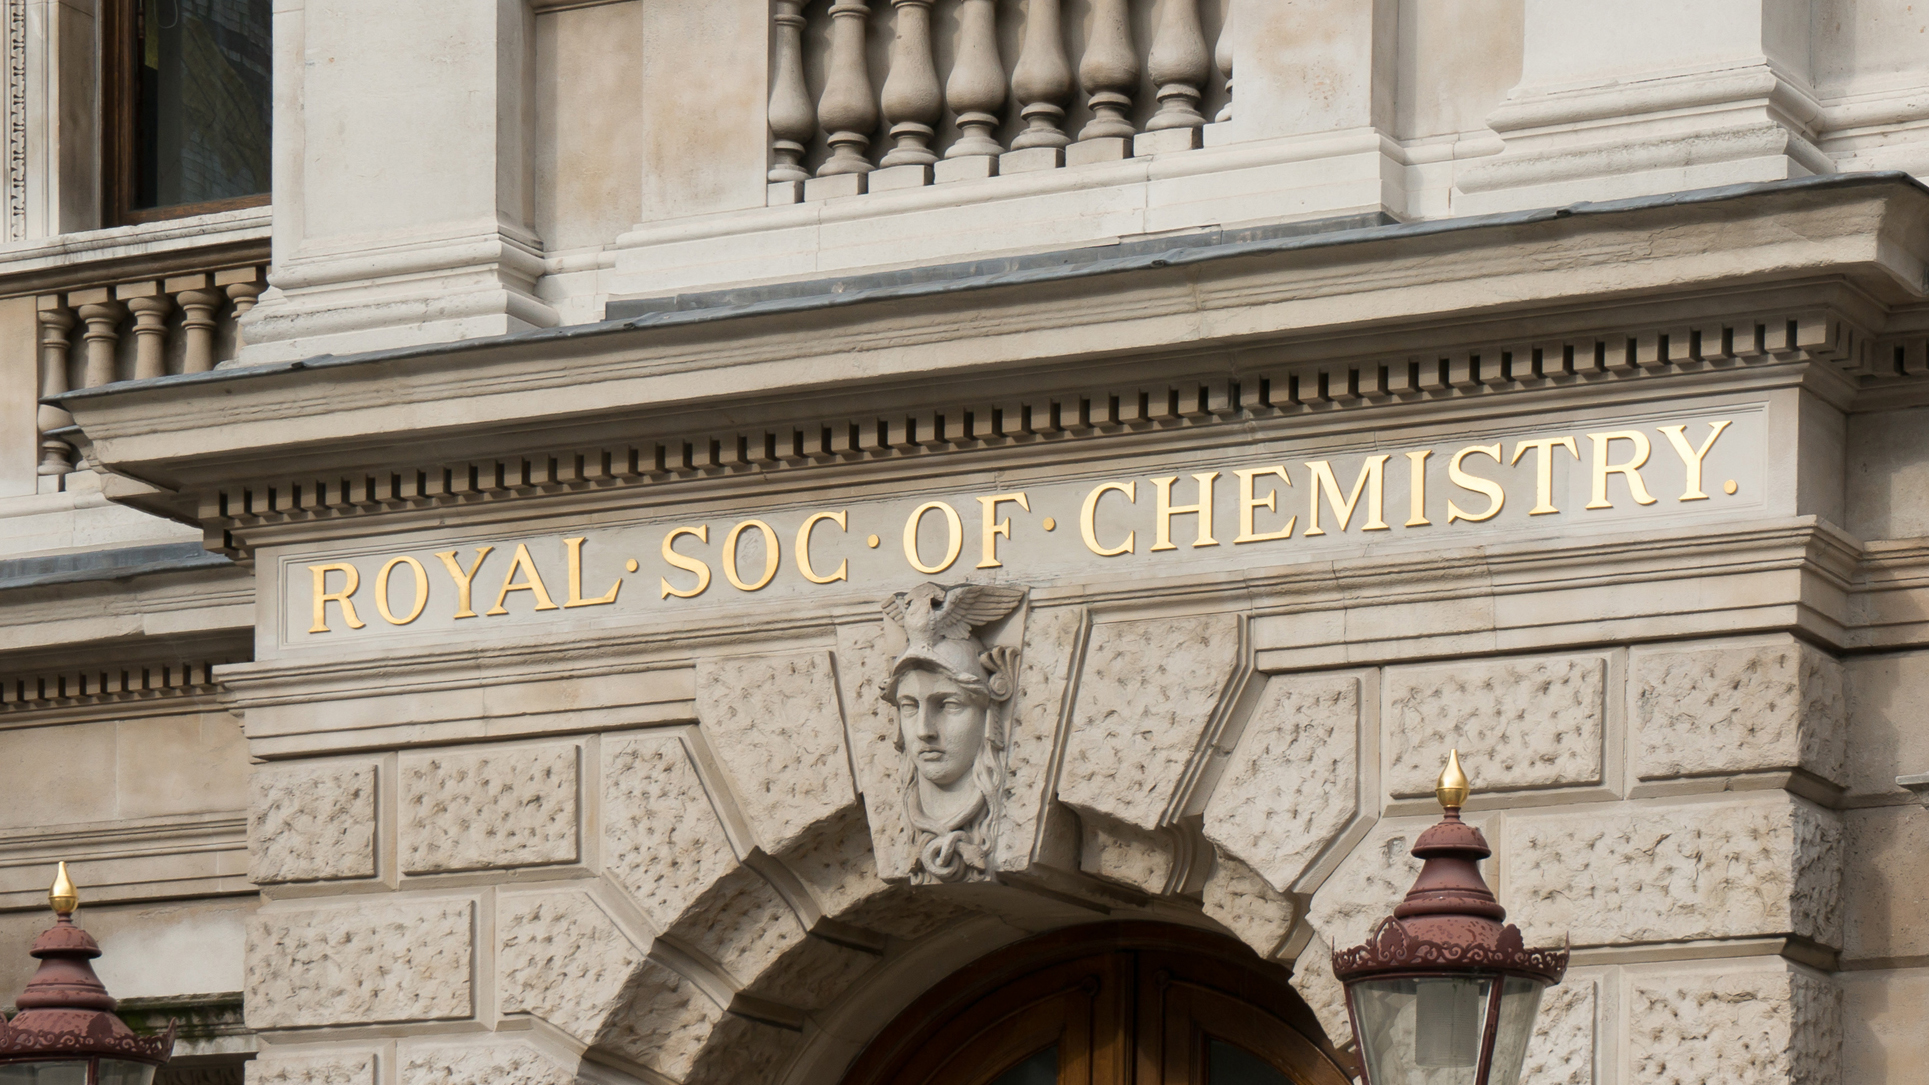 royal society of chemistry